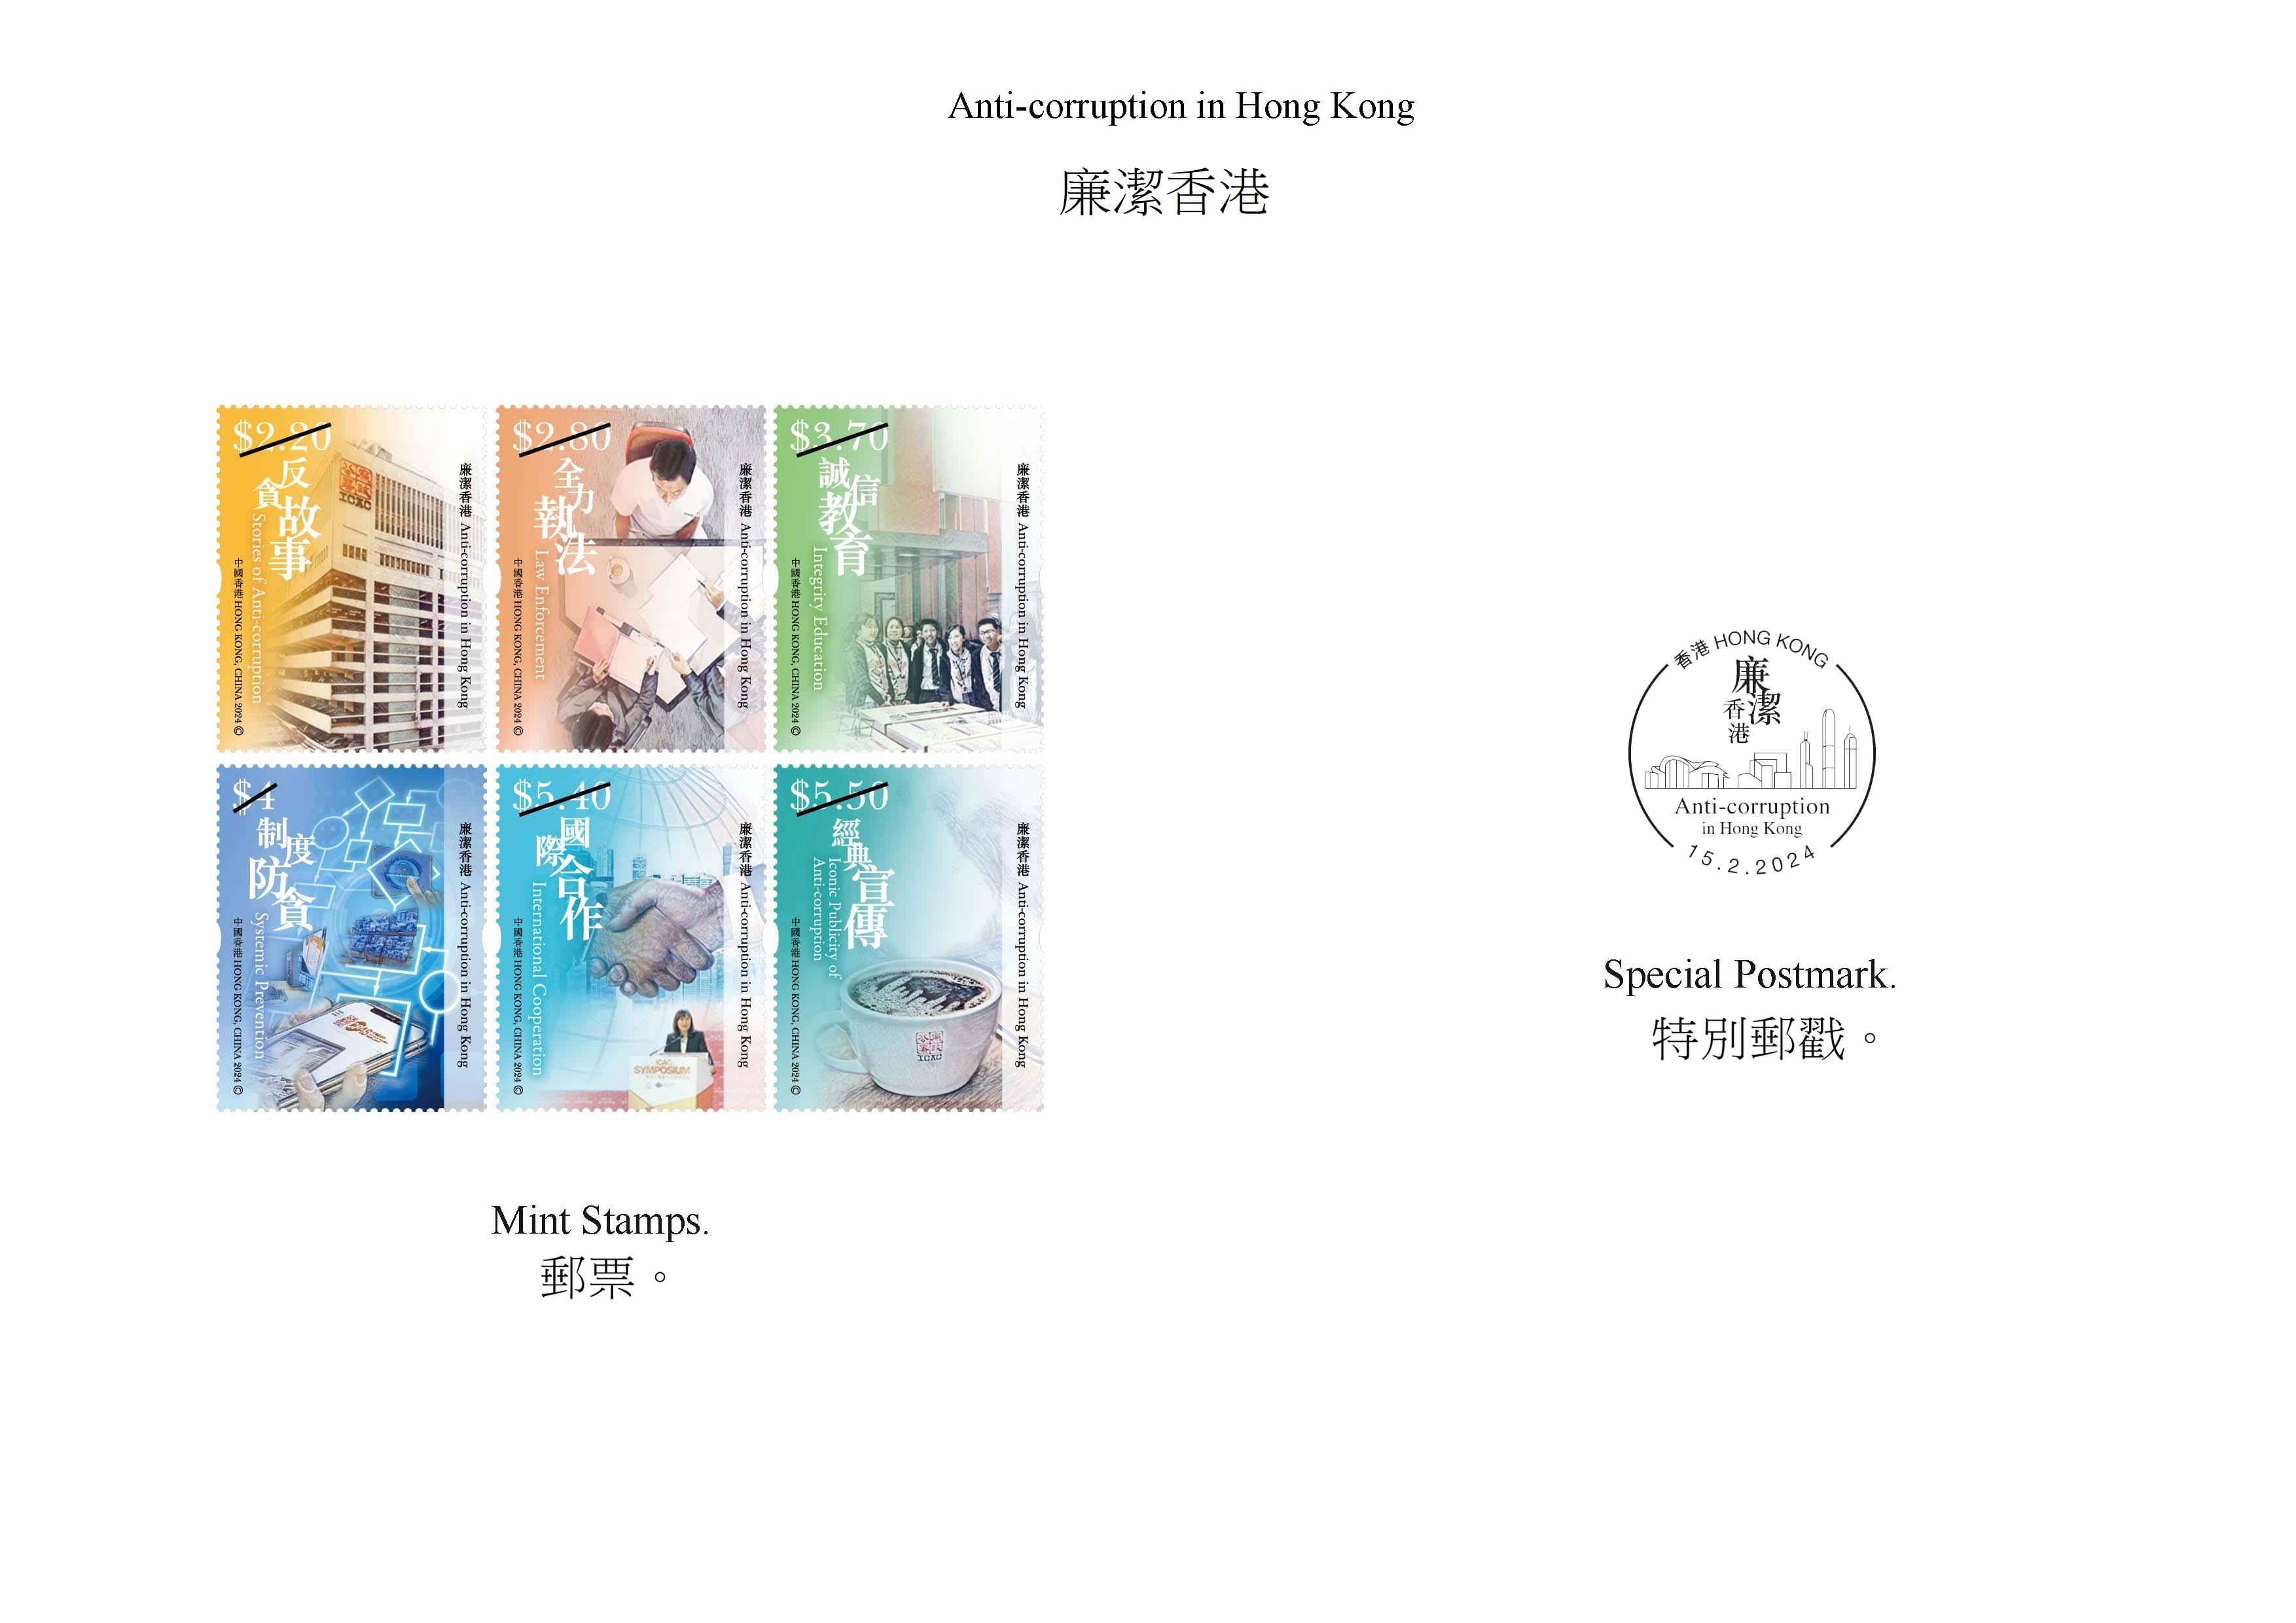 香港邮政二月十五日（星期四）发行以「廉洁香港」为题的特别邮票及相关集邮品。图示邮票和特别邮戳。